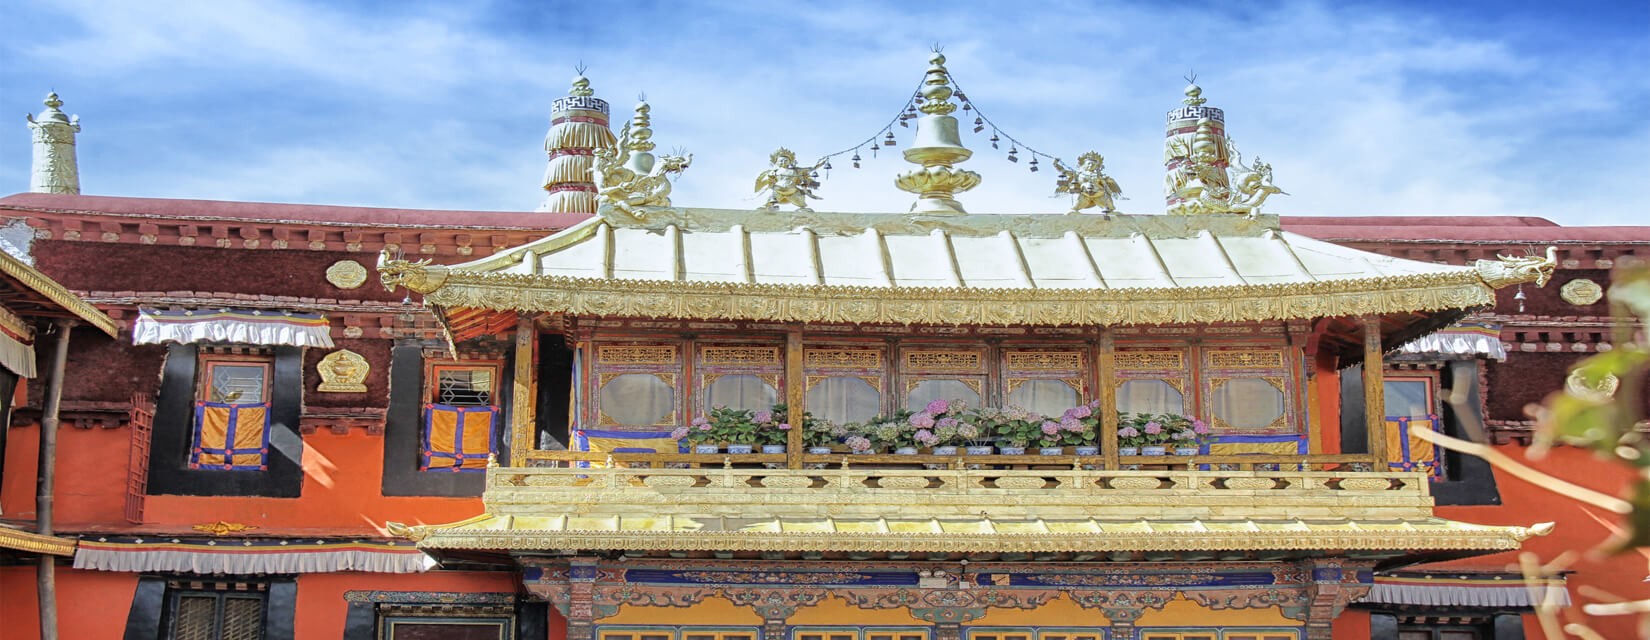 Jokhang Temple - Tibet